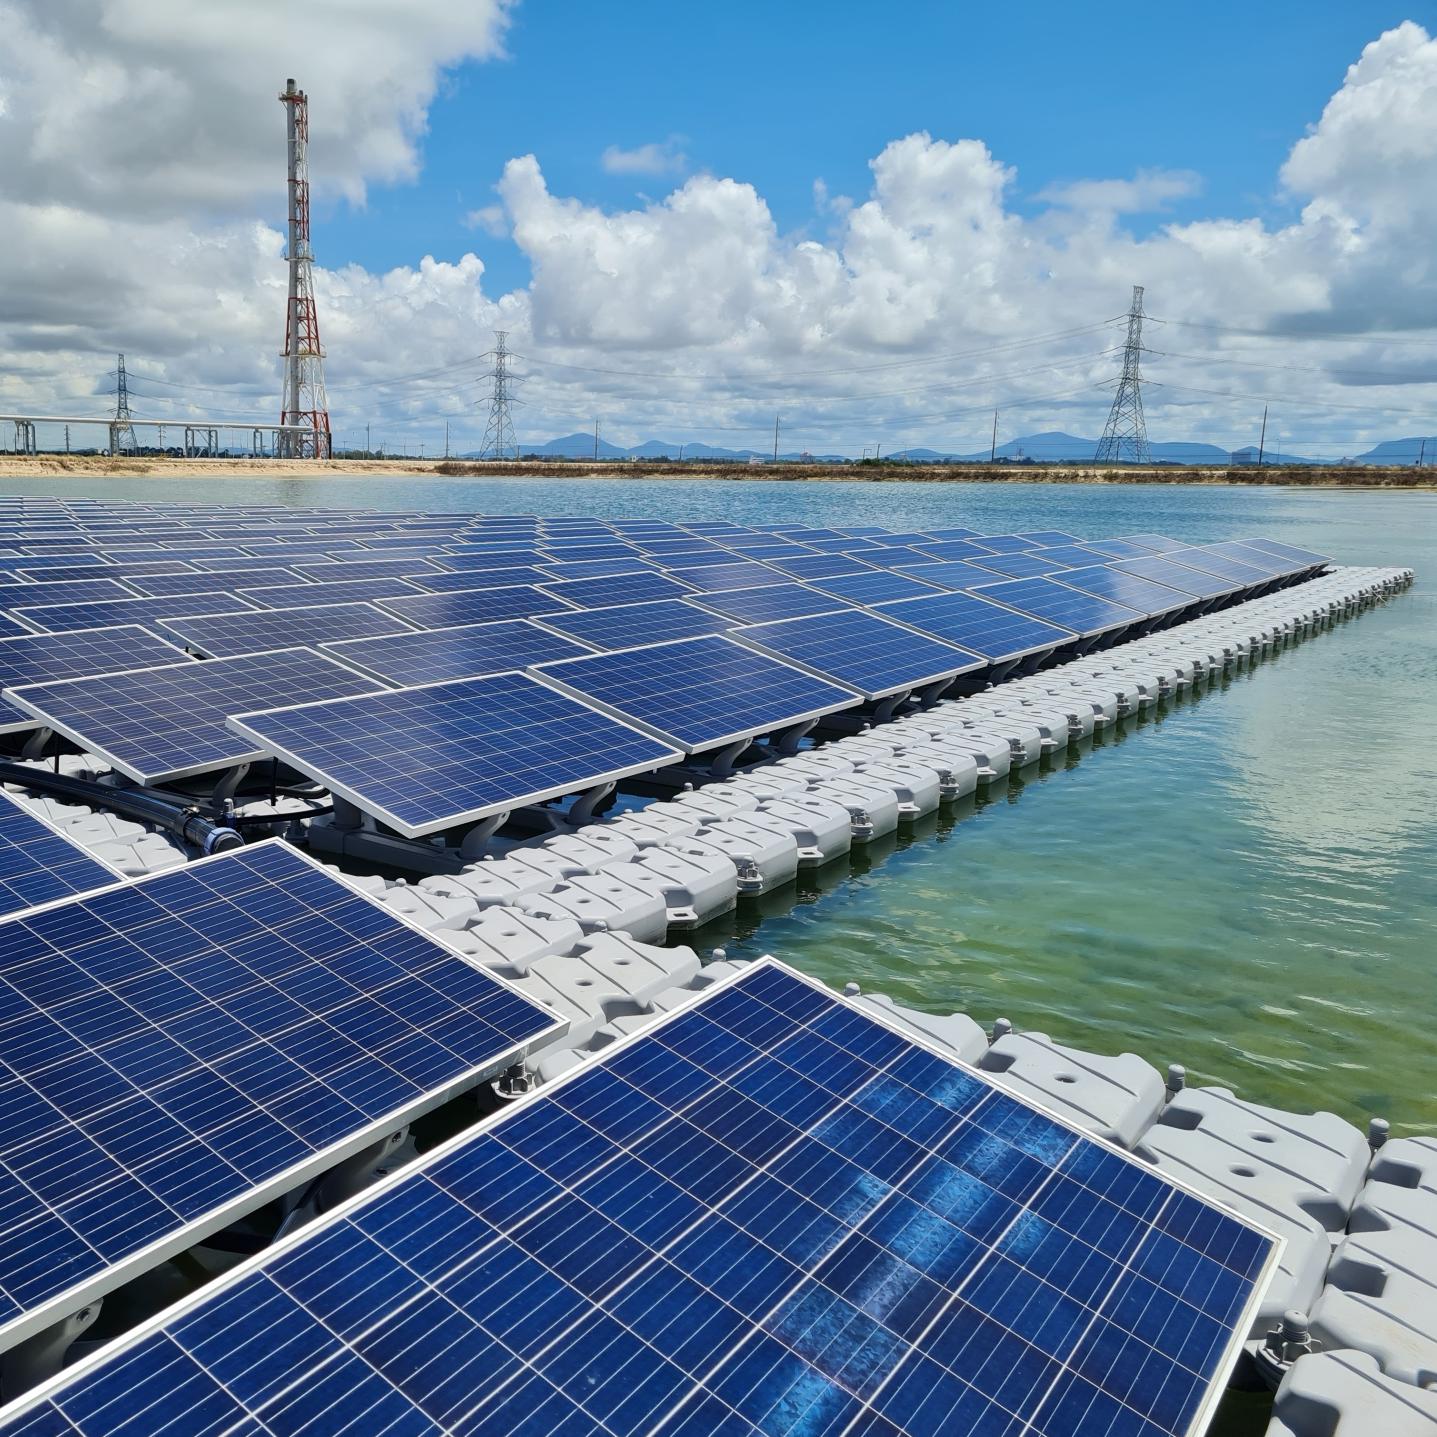 Photovoltaikanlage – Planung, Förderung & Anschluss - Energie und Wasser  Potsdam